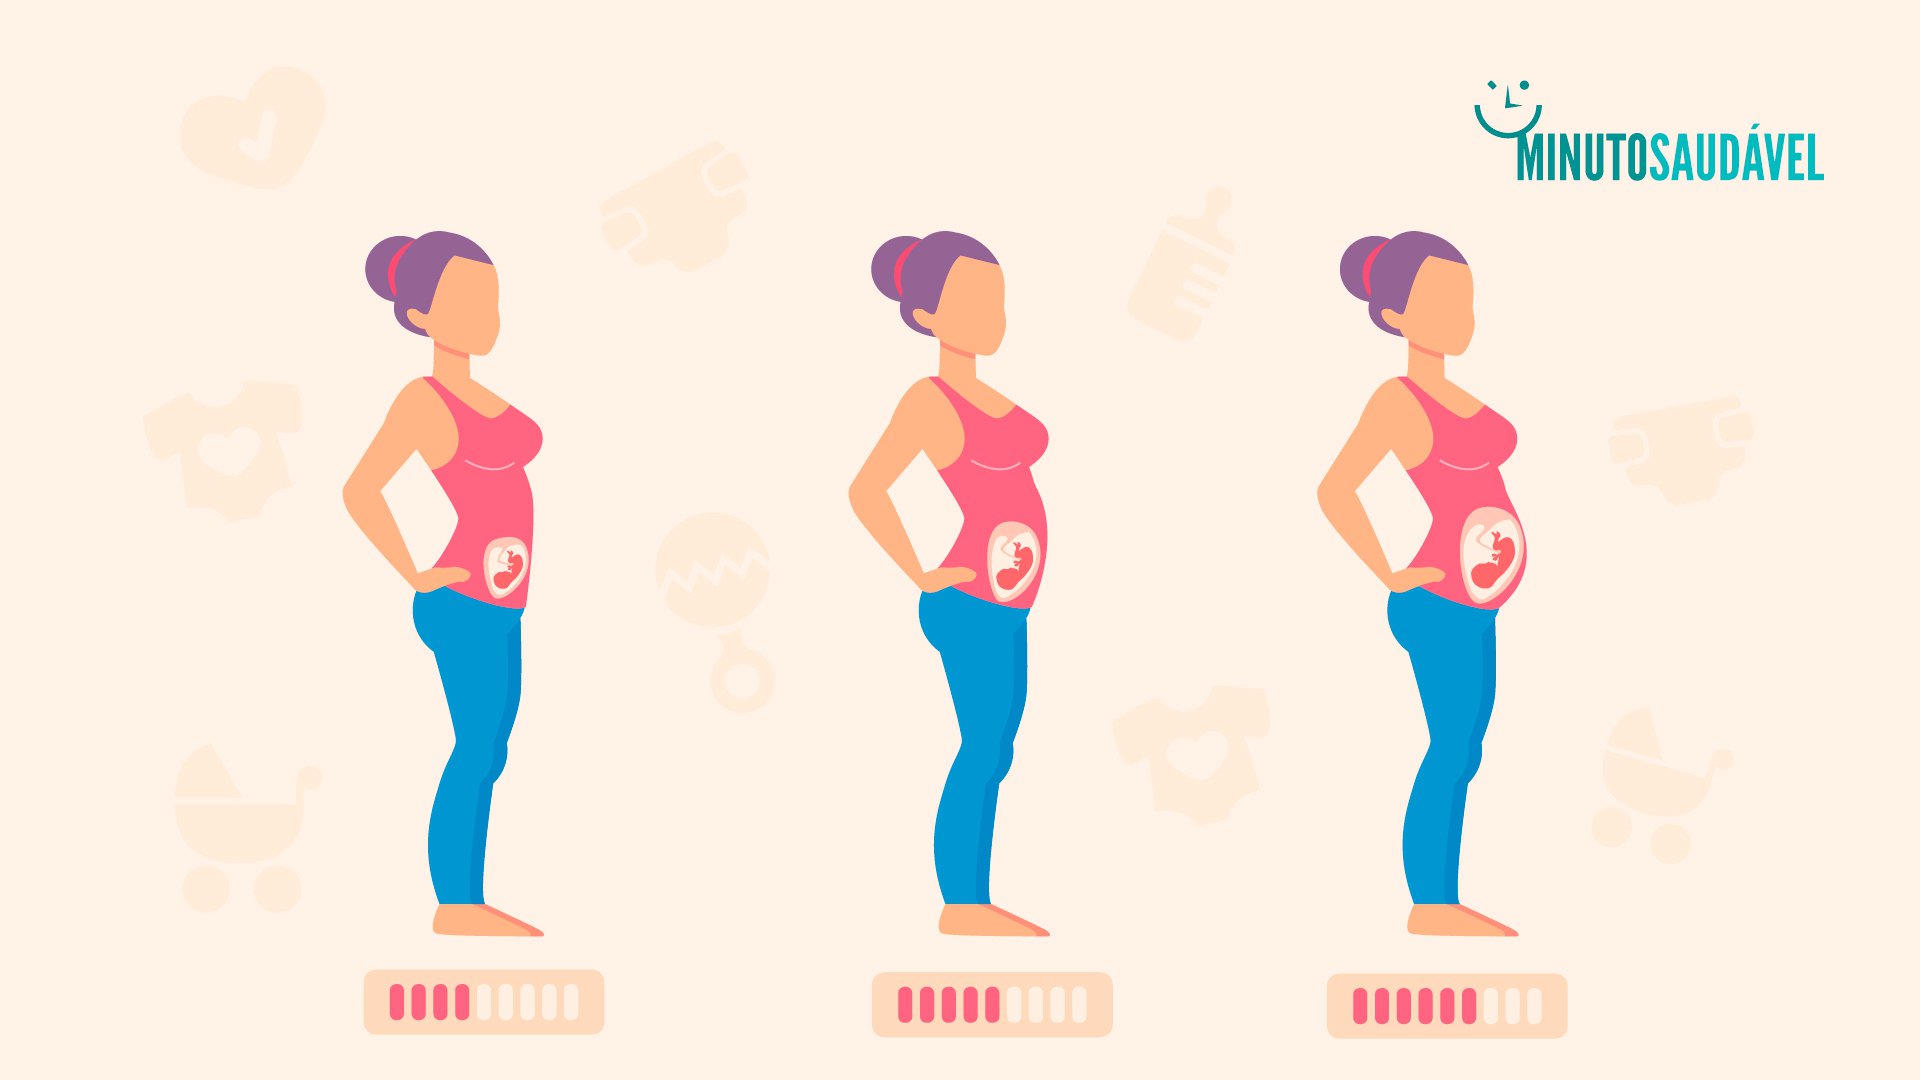 Foto de capa do artigo "Segundo trimestre de gravidez: como está o bebê nessa fase?"